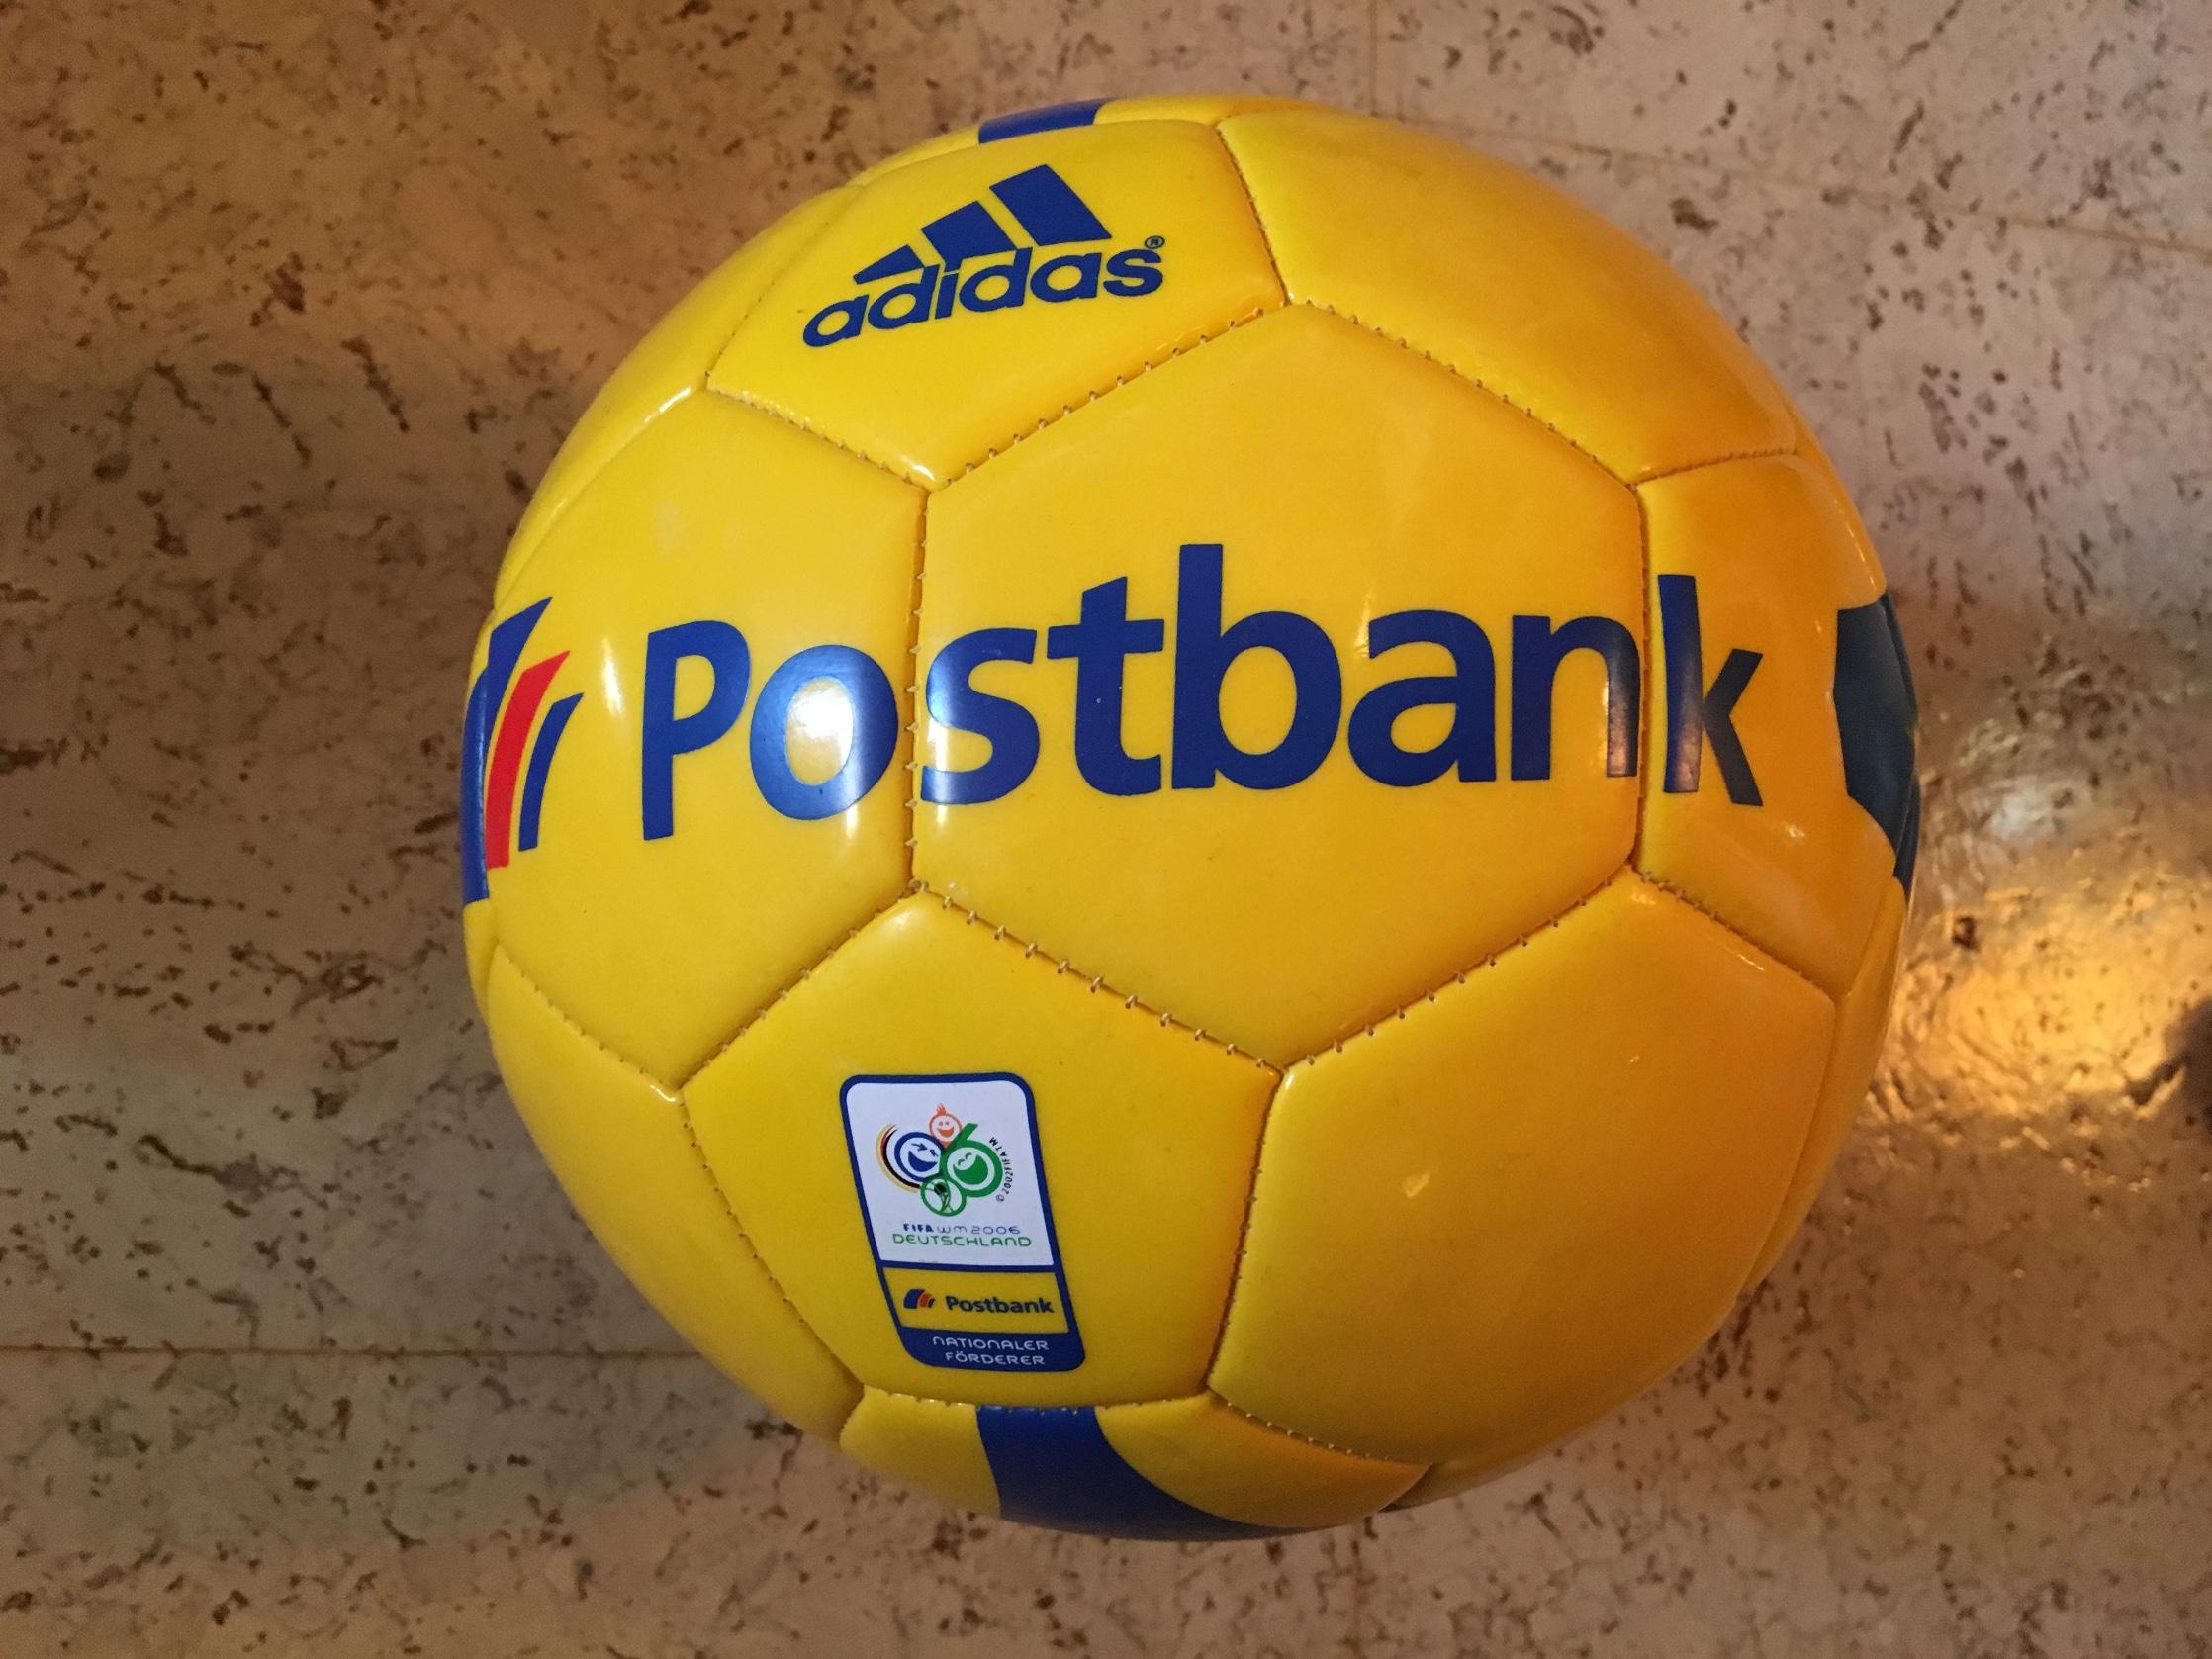 adidas postbank ball cheap online